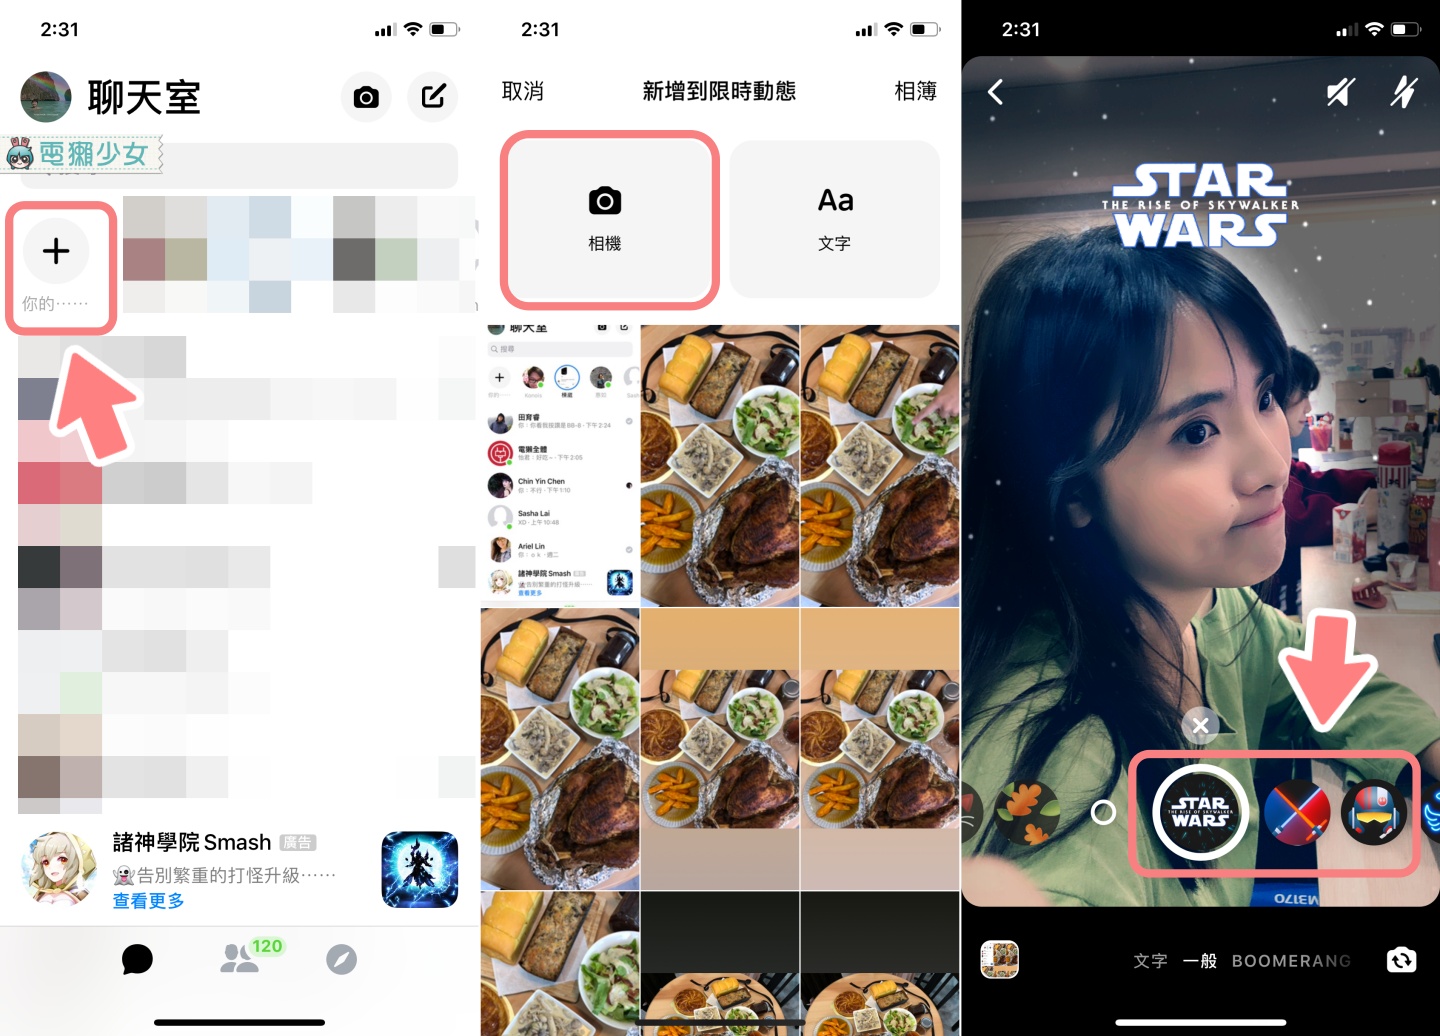 如何把 Facebook 聊天室換成《星際大戰》主題 讓 BB-8 幫你按讚 還有《星際大戰》的貼圖喔！